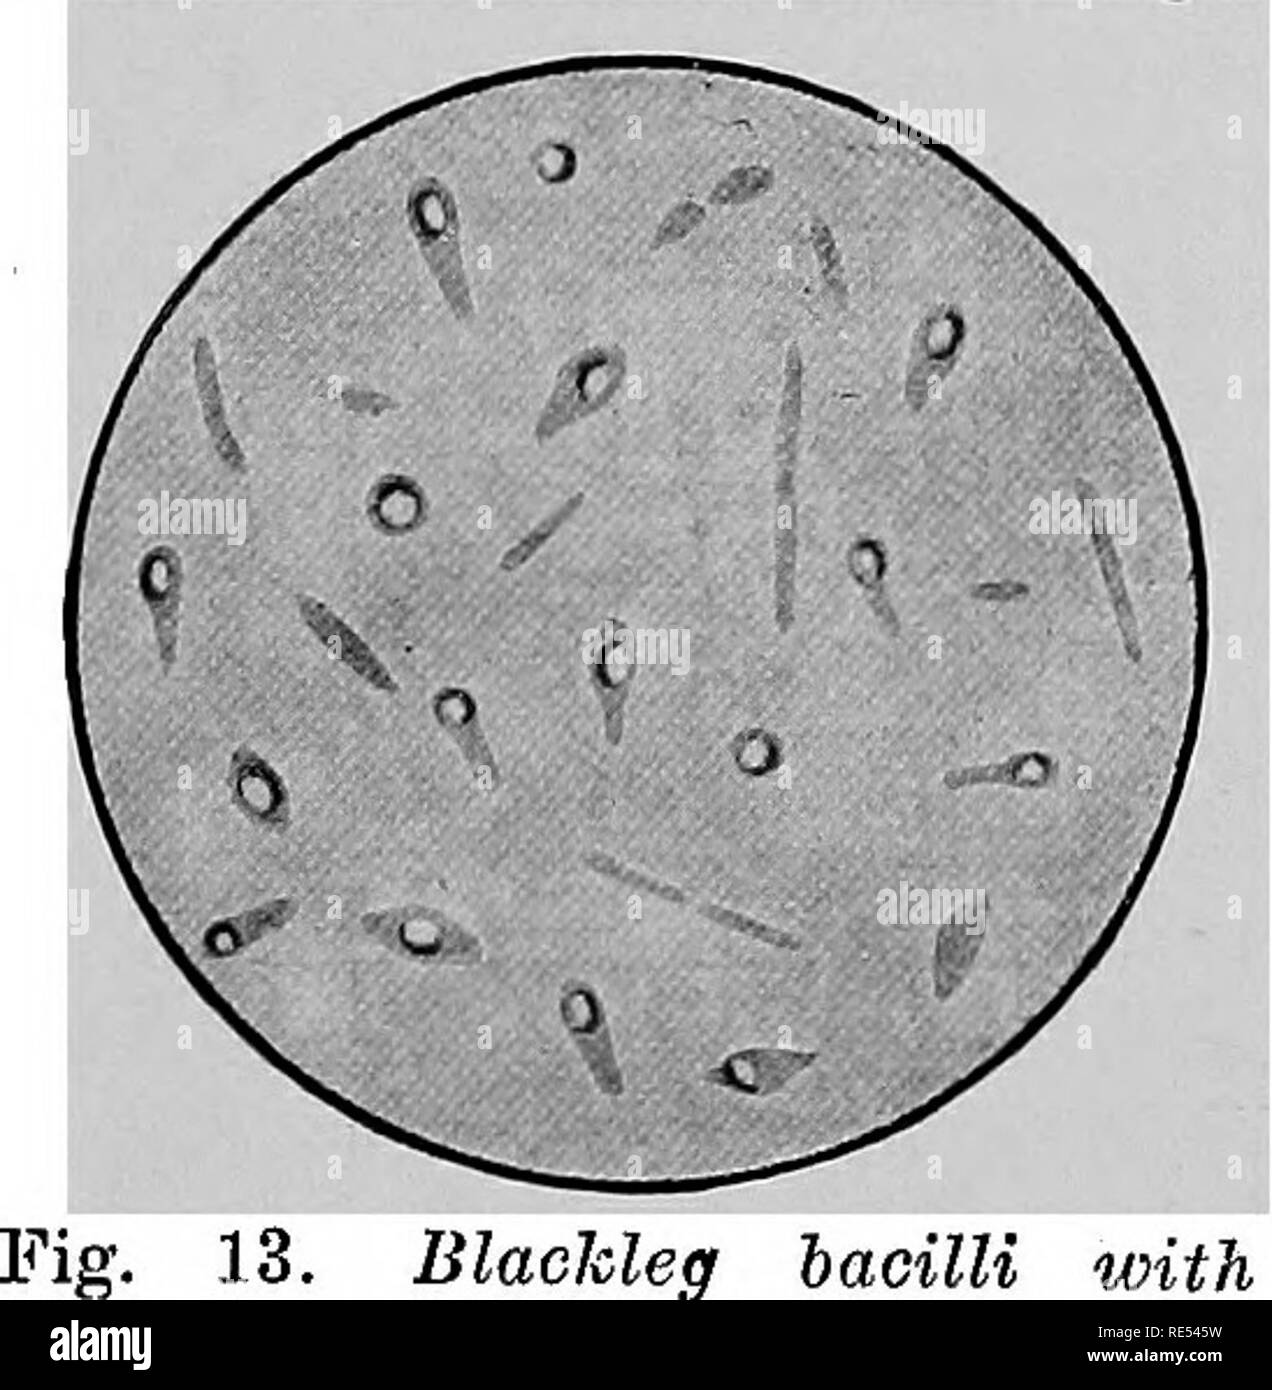 Flagella staining immagini e fotografie stock ad alta risoluzione - Alamy